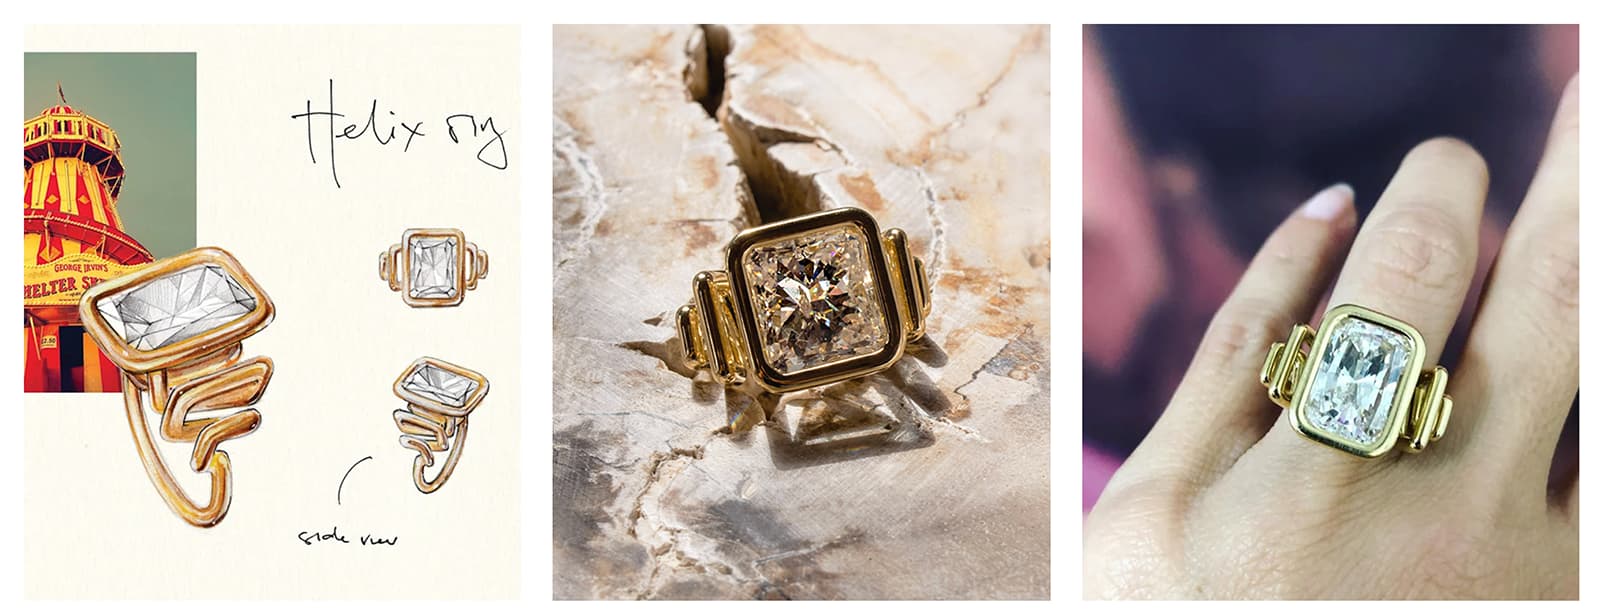 Жемчужина новой коллекции Livewire Джессики МакКормак - кольцо Helix с бриллиантом огранки Radiant 16.23ct или 5.70ct